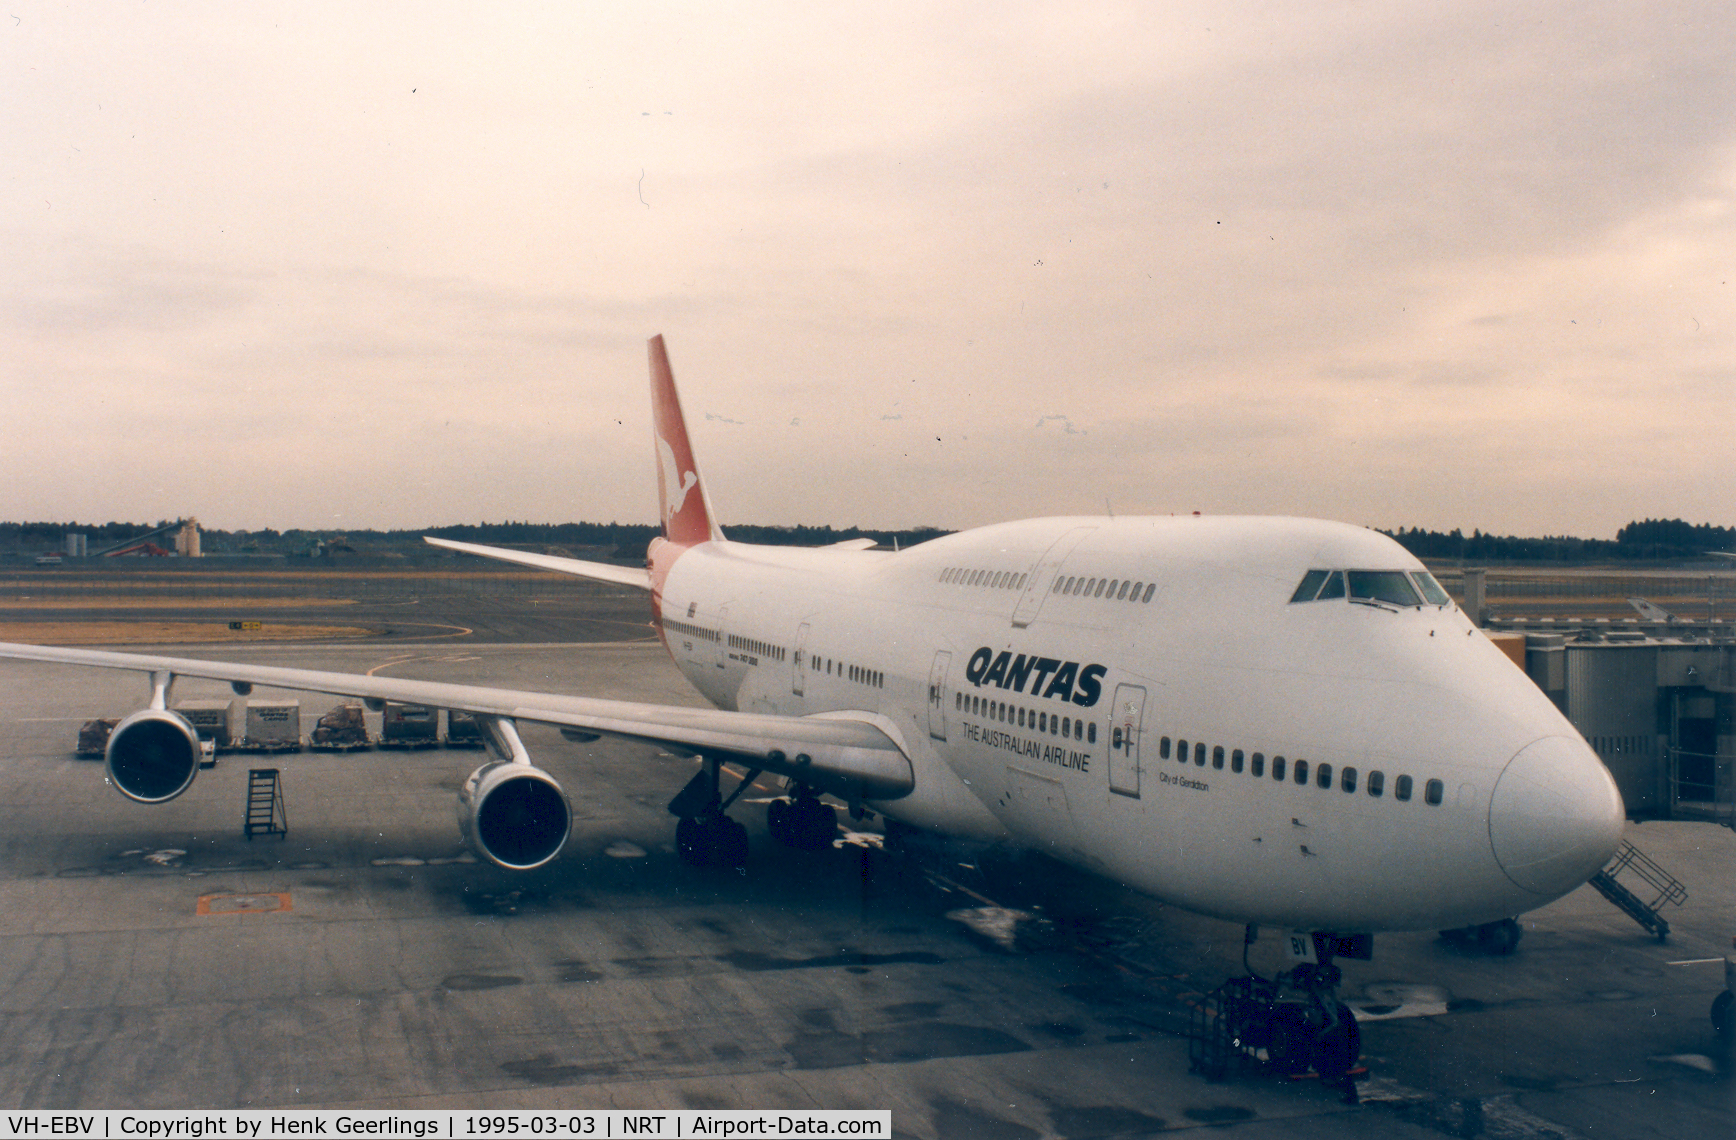 VH-EBV, 1985 Boeing 747-338 C/N 23224, Qantas